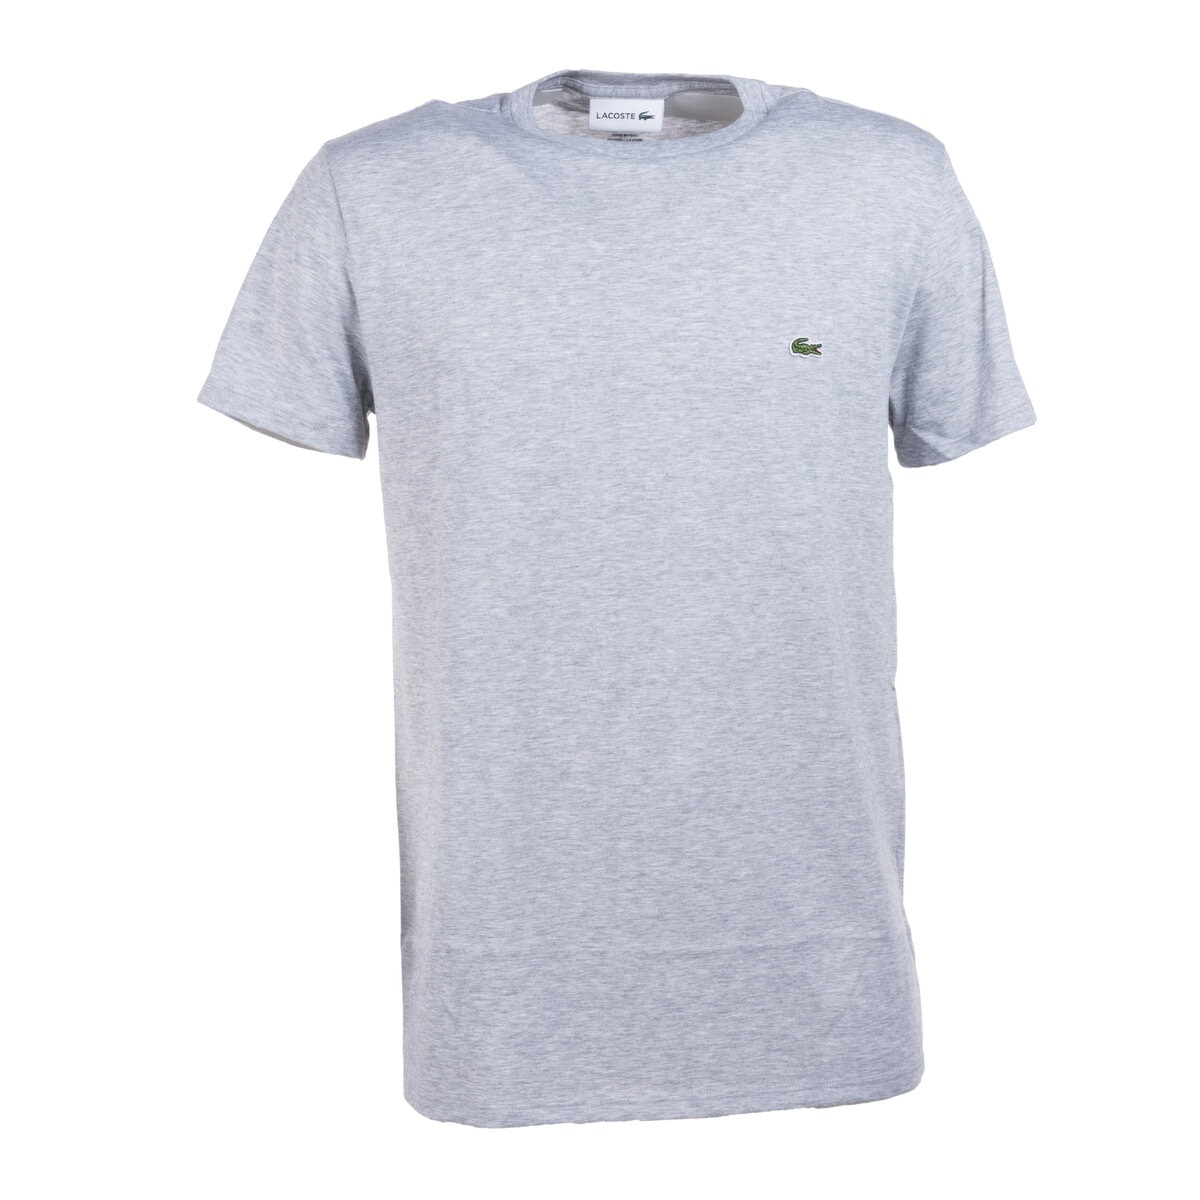 ラコステ メンズ クルーネック 半袖Tシャツ ピマコットン シルバーチャイン 6(XL)